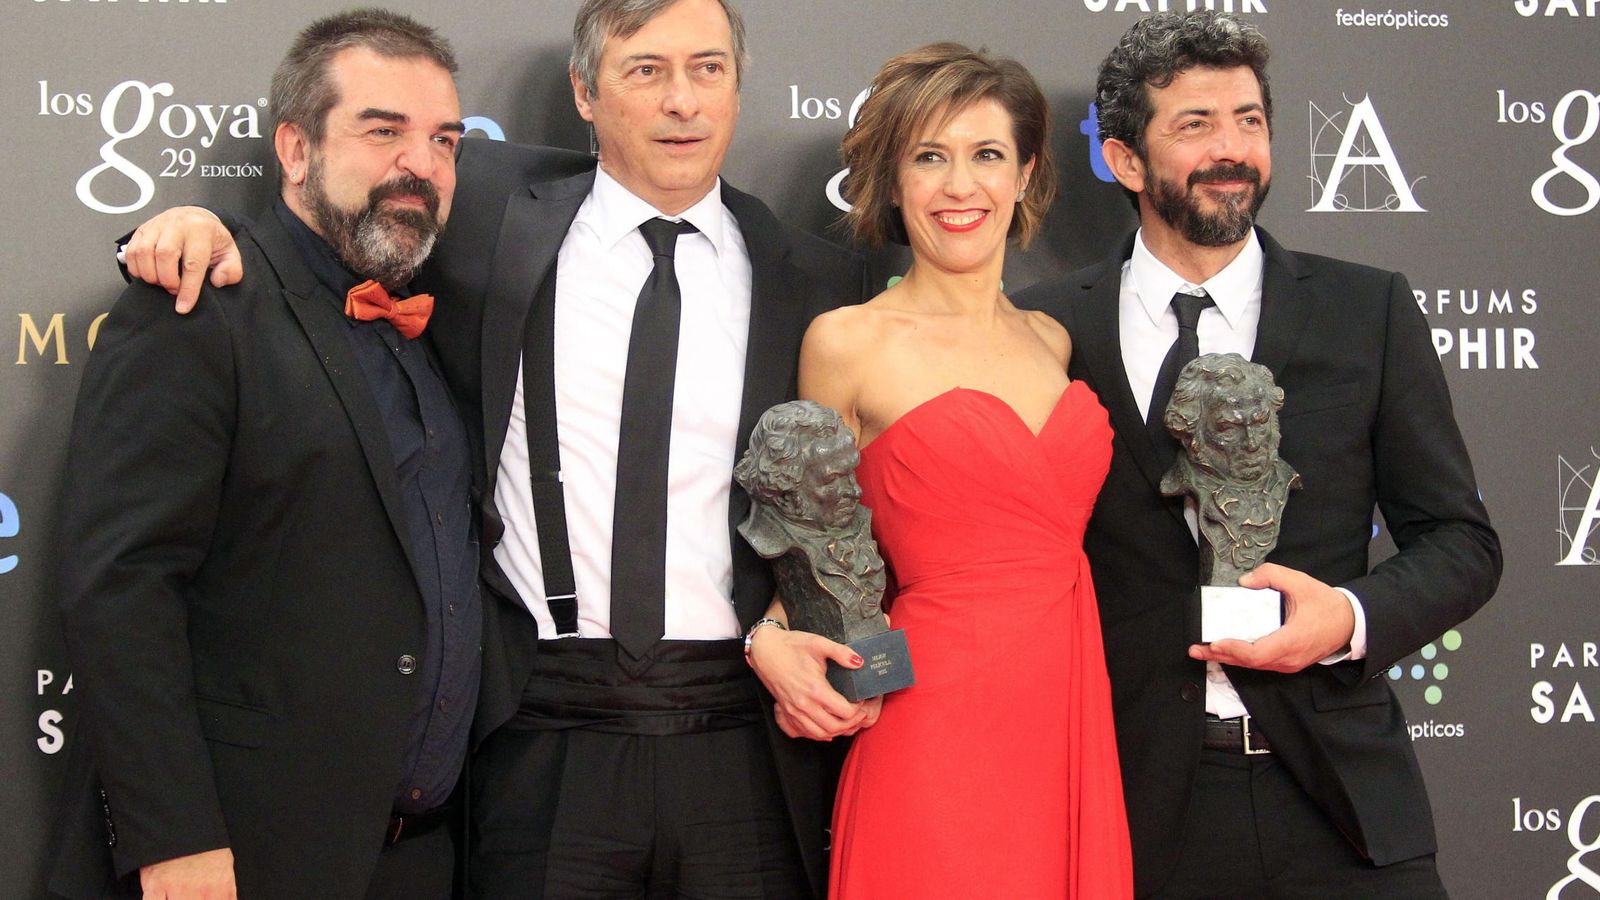 Foto: Los productores de 'La isla mínima', Gervasio Iglesias (izquierda), José Antonio Félez y Mercedes Gamero, junto al director, Alberto Rodríguez, en los Goya de 2015. EFE